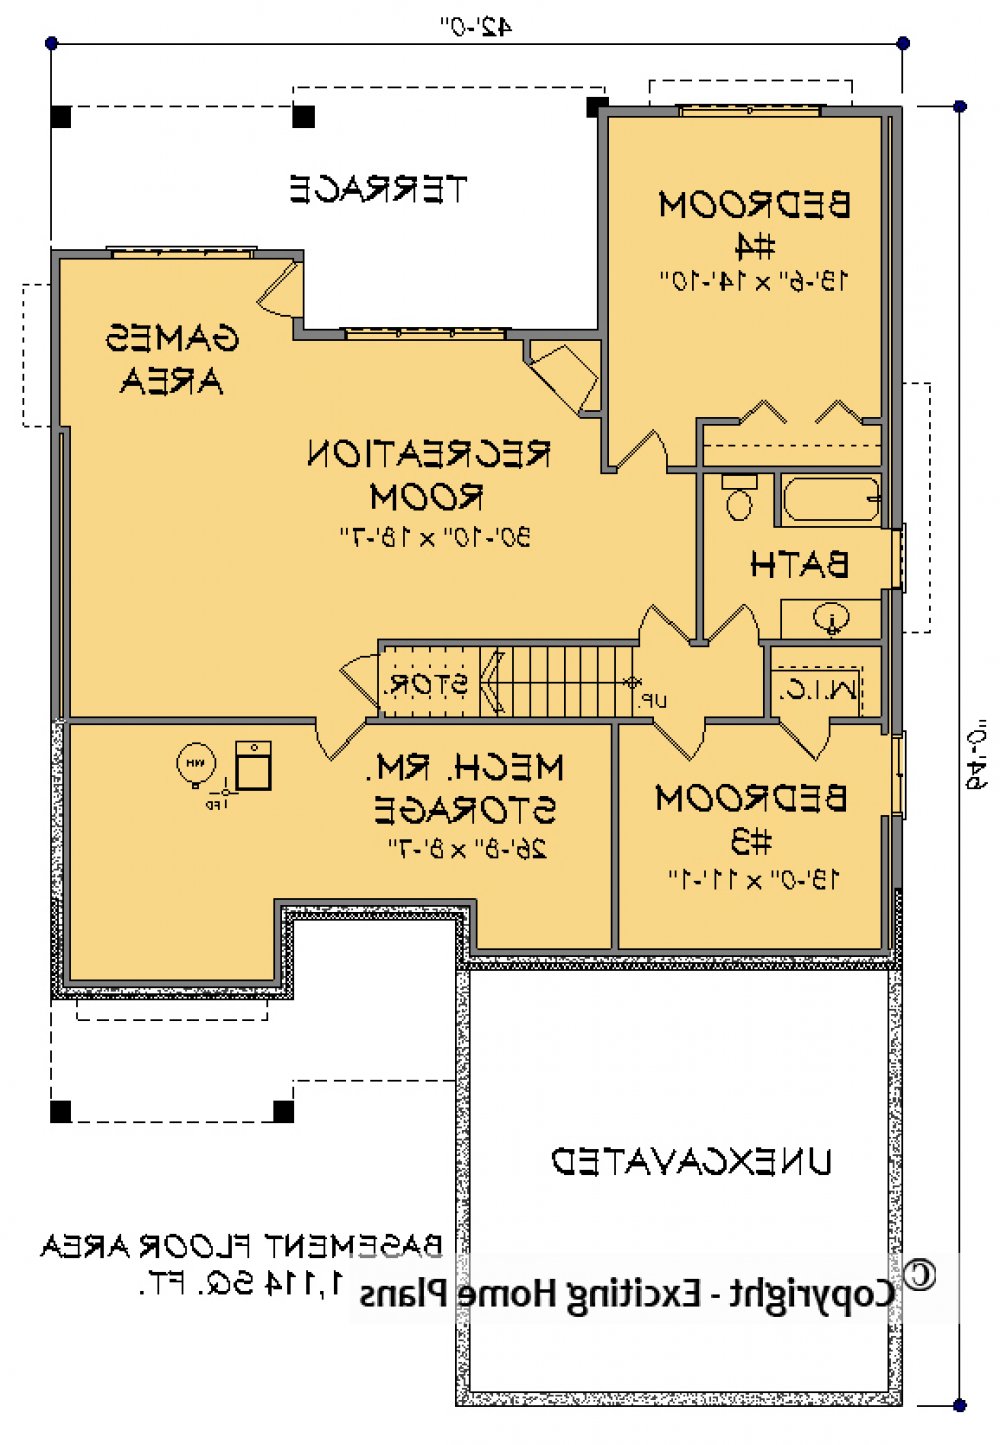 House Plan E1595 -10 Lower Floor Plan REVERSE